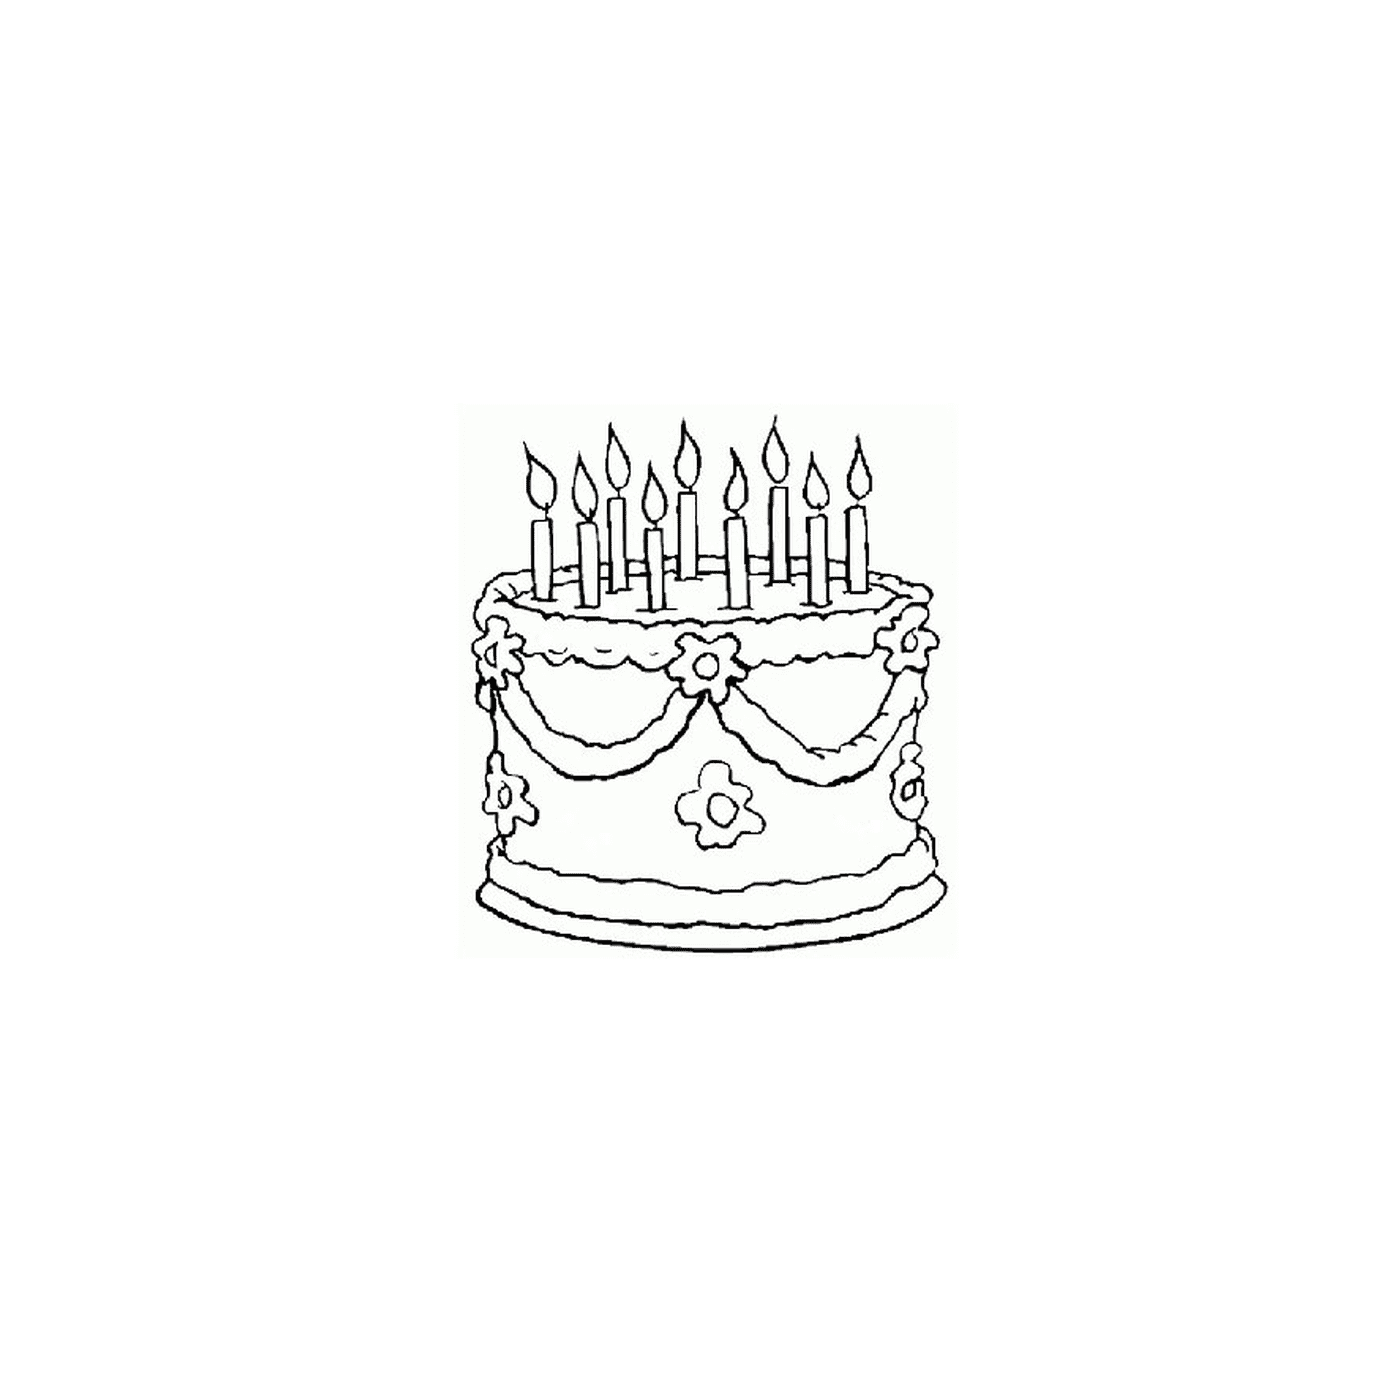  una torta di compleanno con candele accese 